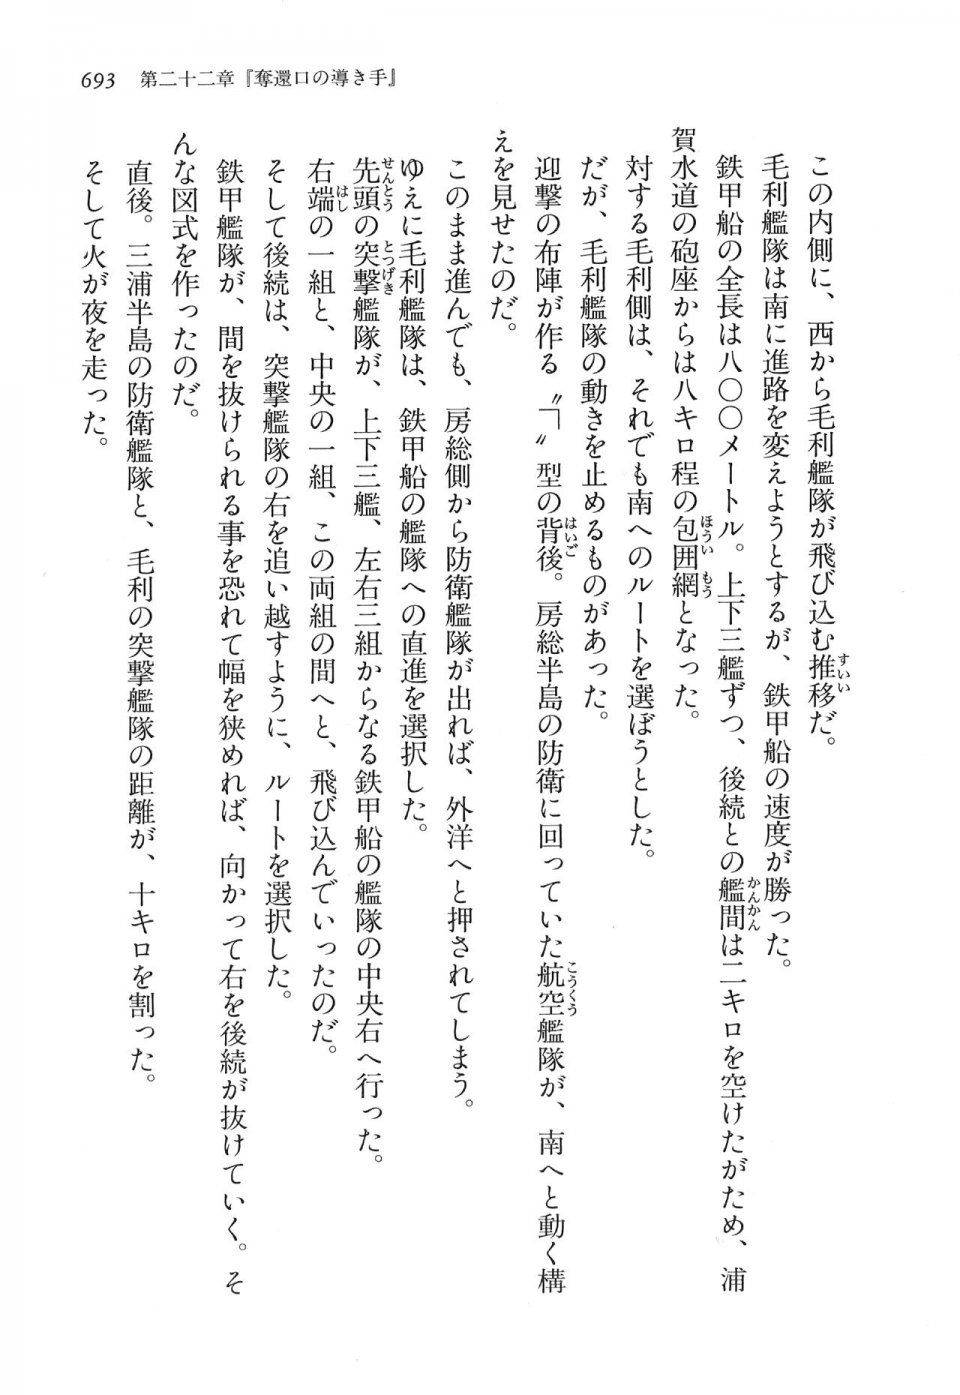 Kyoukai Senjou no Horizon LN Vol 16(7A) - Photo #693